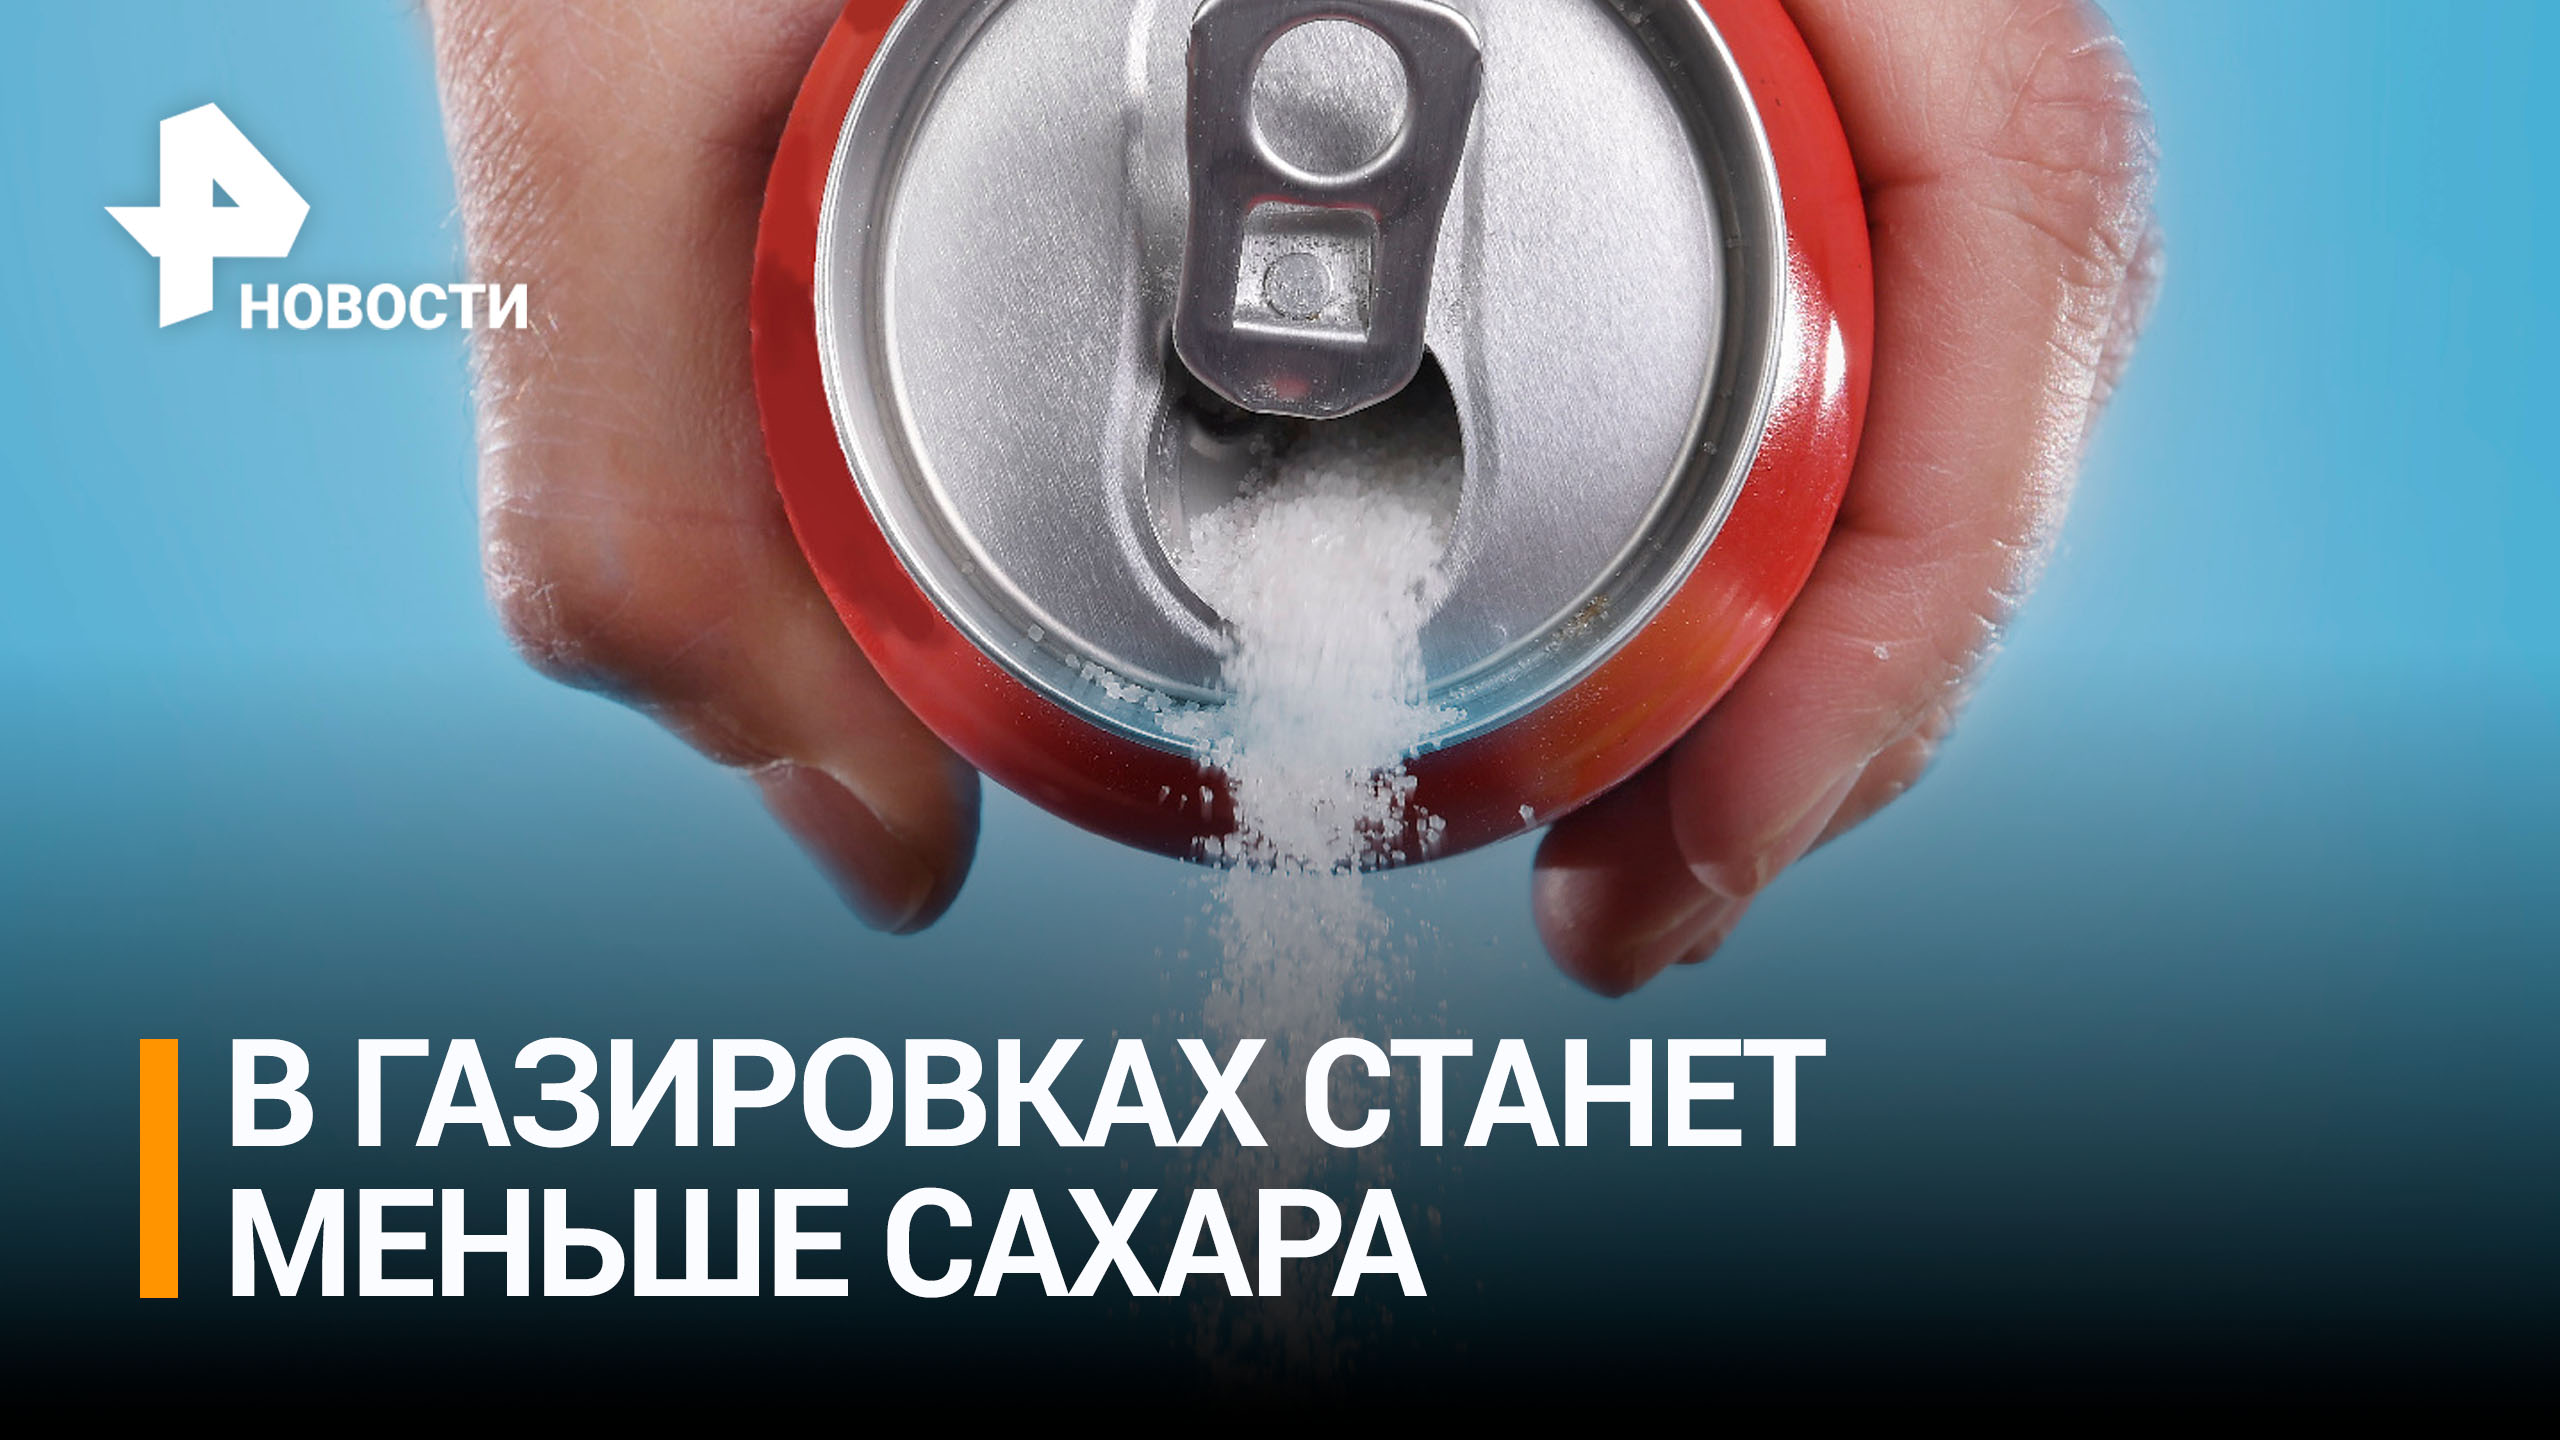 Производители газировки уменьшили количество сахара в напитках / РЕН Новости